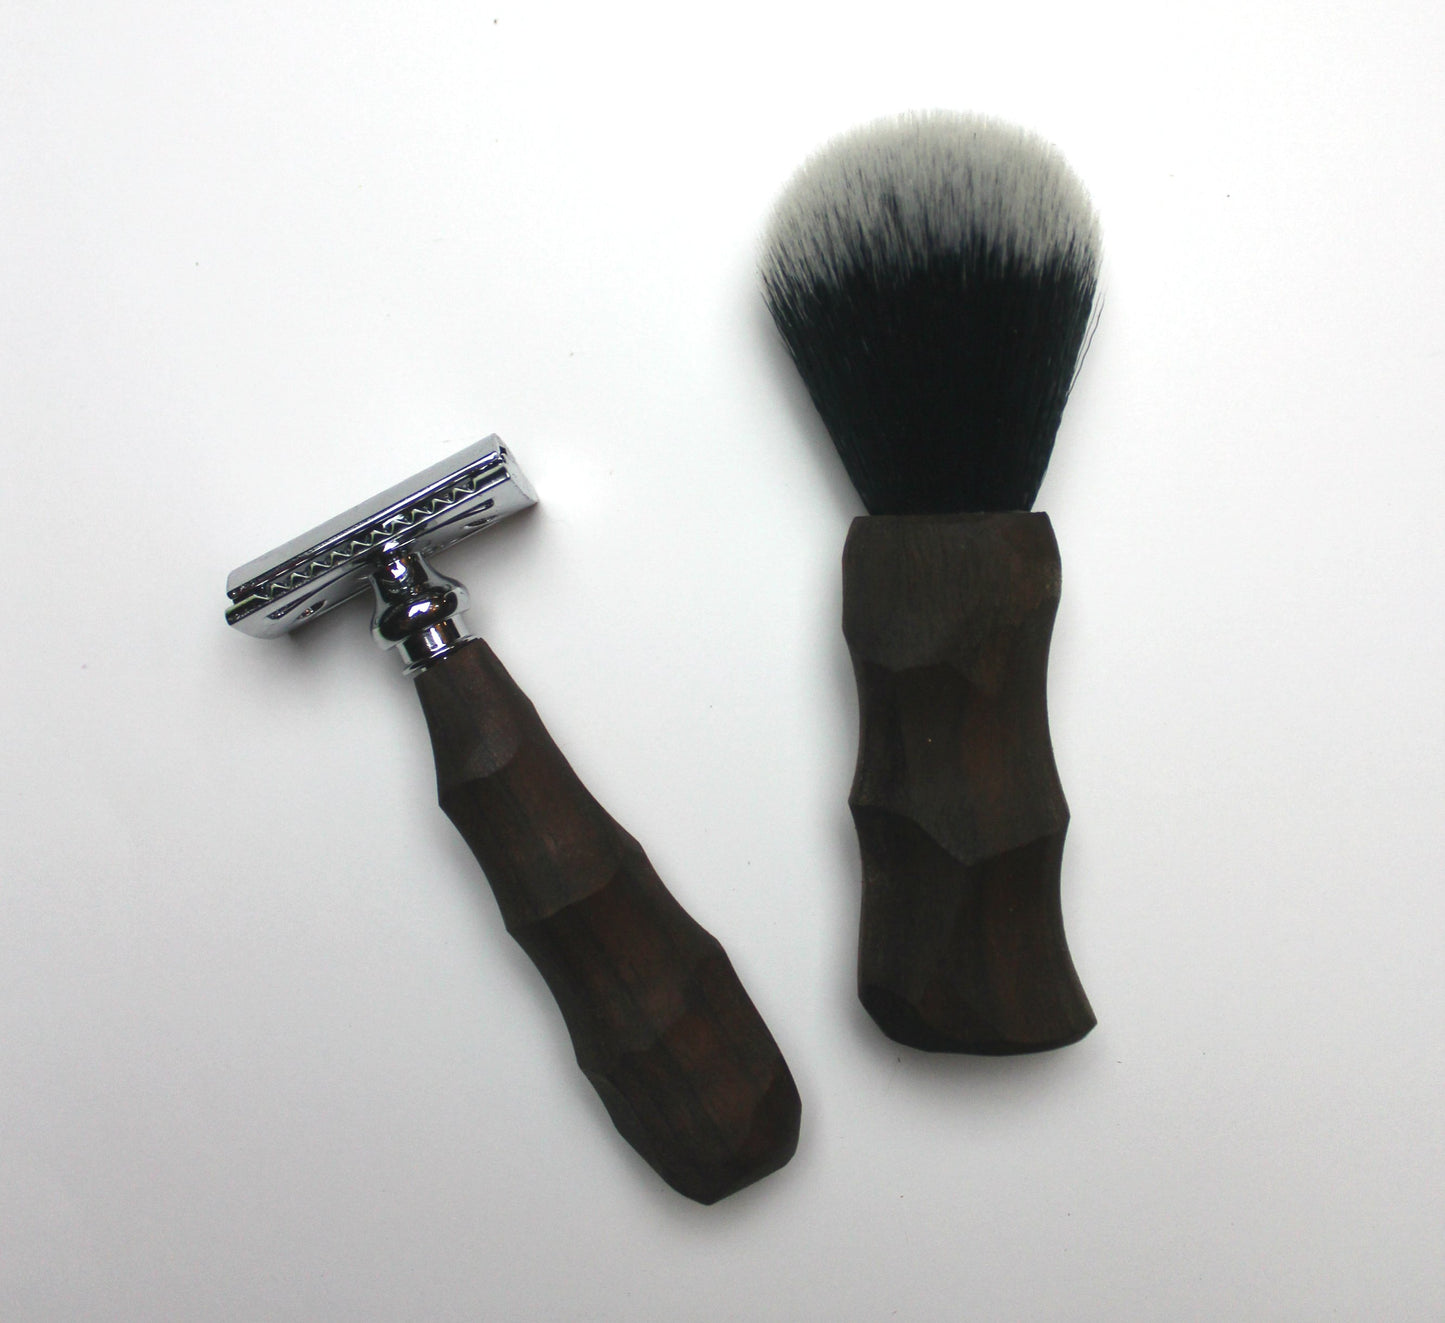 Chiseled Safety Razor & Shaving Brush Combo Set